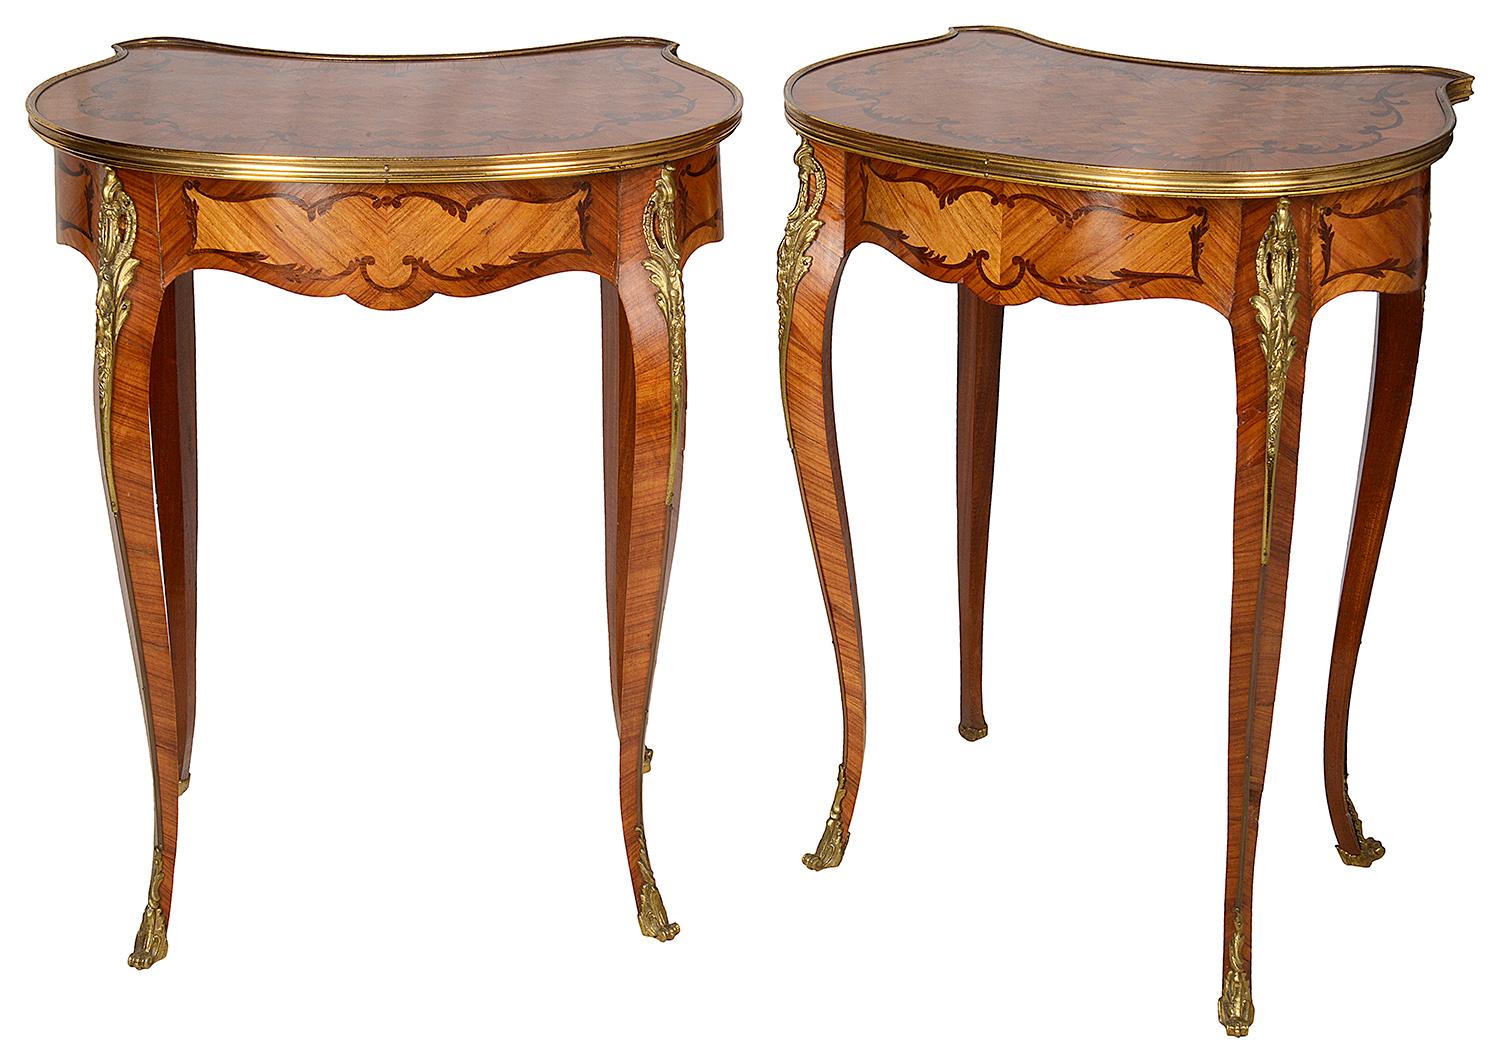 Une paire de tables d'appoint de style Louis XVI de bonne qualité, chacune avec un seul tiroir en frise et reposant sur d'élégants pieds cabriole se terminant par des pieds en bronze doré.